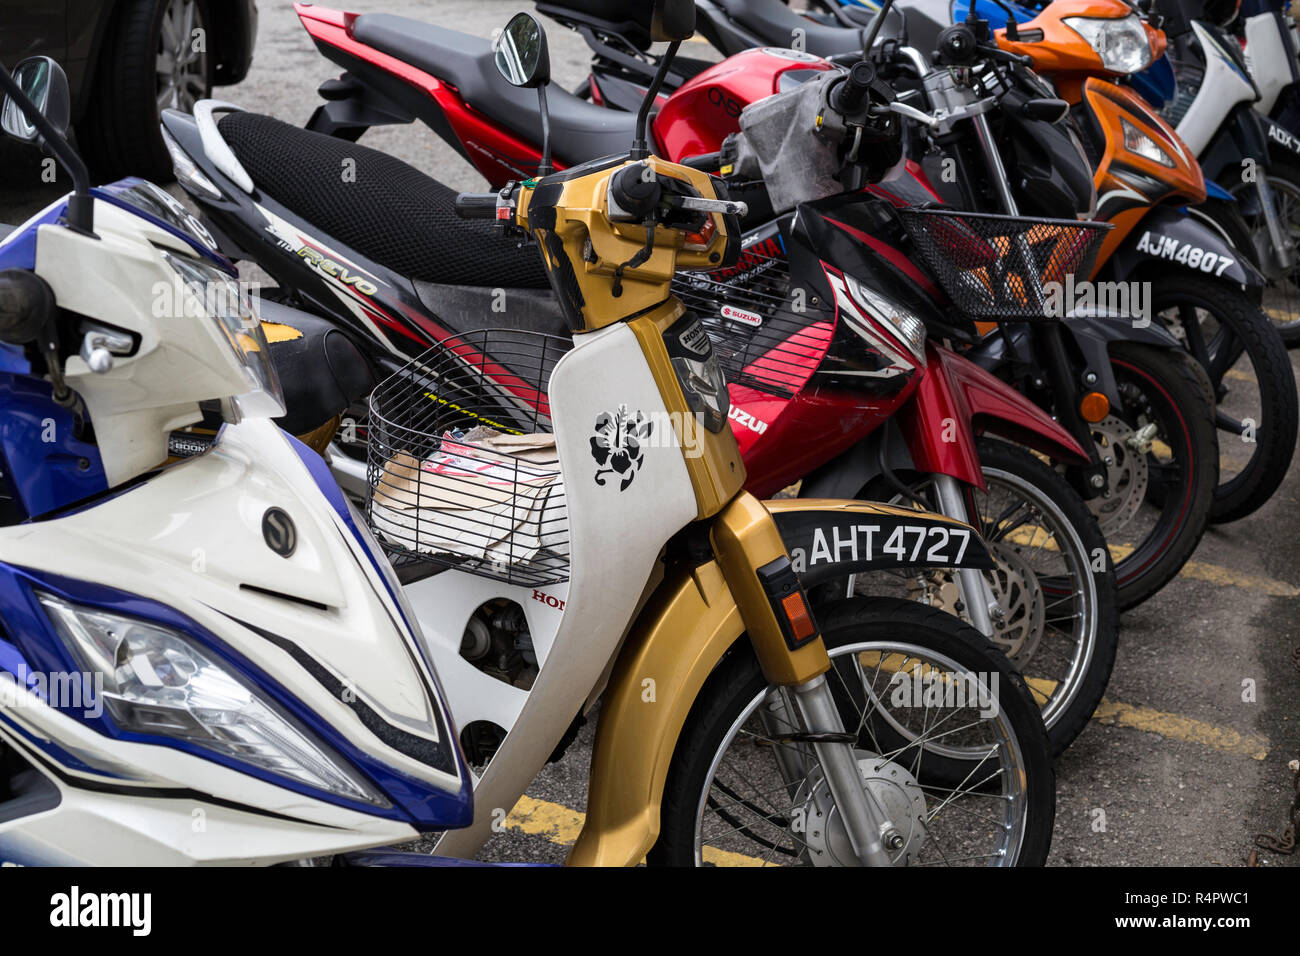 Les motos garées, Ipoh, Malaisie. Banque D'Images